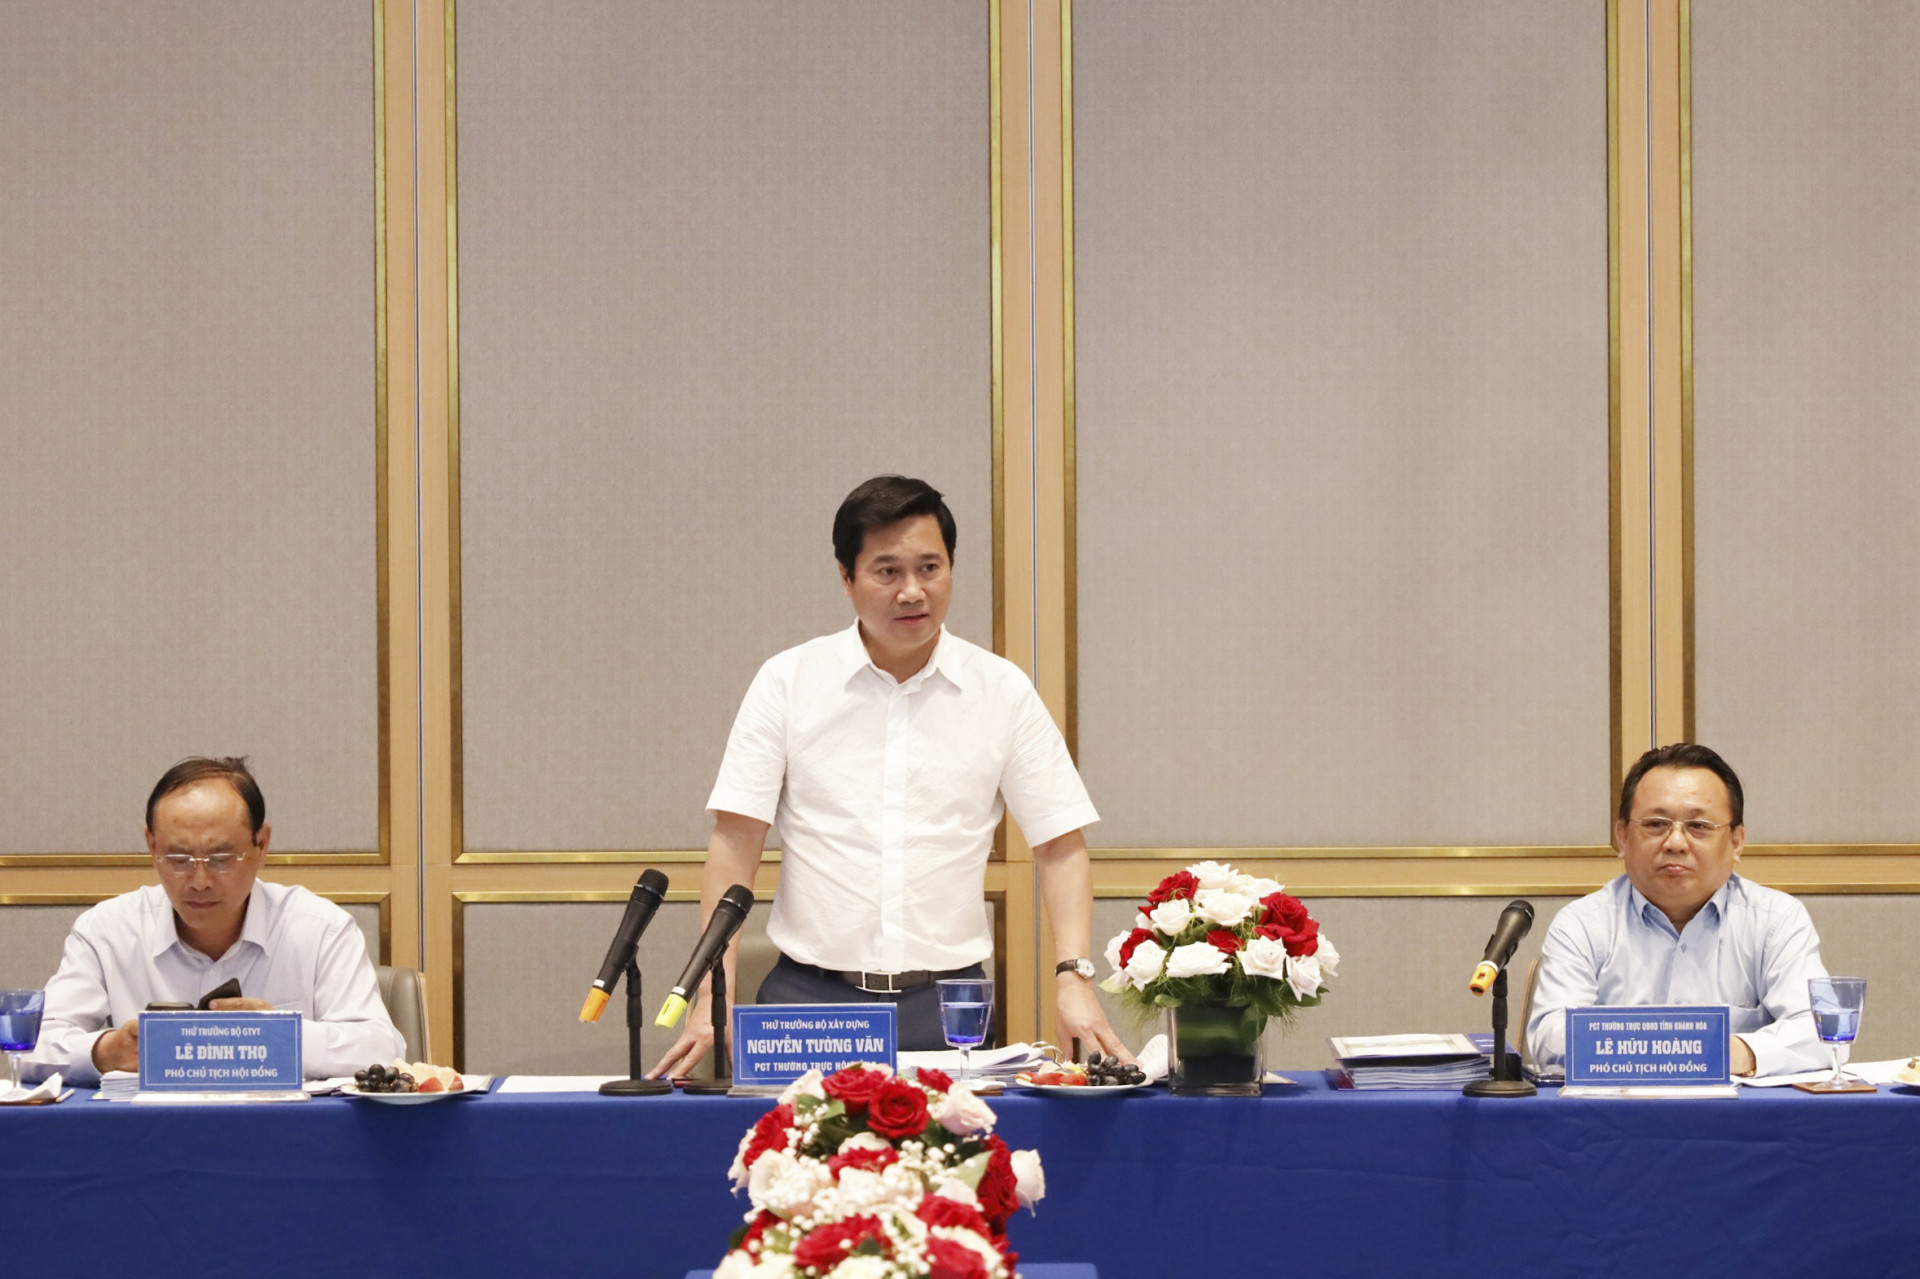 Đồng chí Nguyễn Tường Văn - Thứ trưởng Bộ Xây dựng, Phó Chủ tịch Thường trực Hội đồng phát biểu chỉ đạo sau khi kiểm tra, thảo luận.